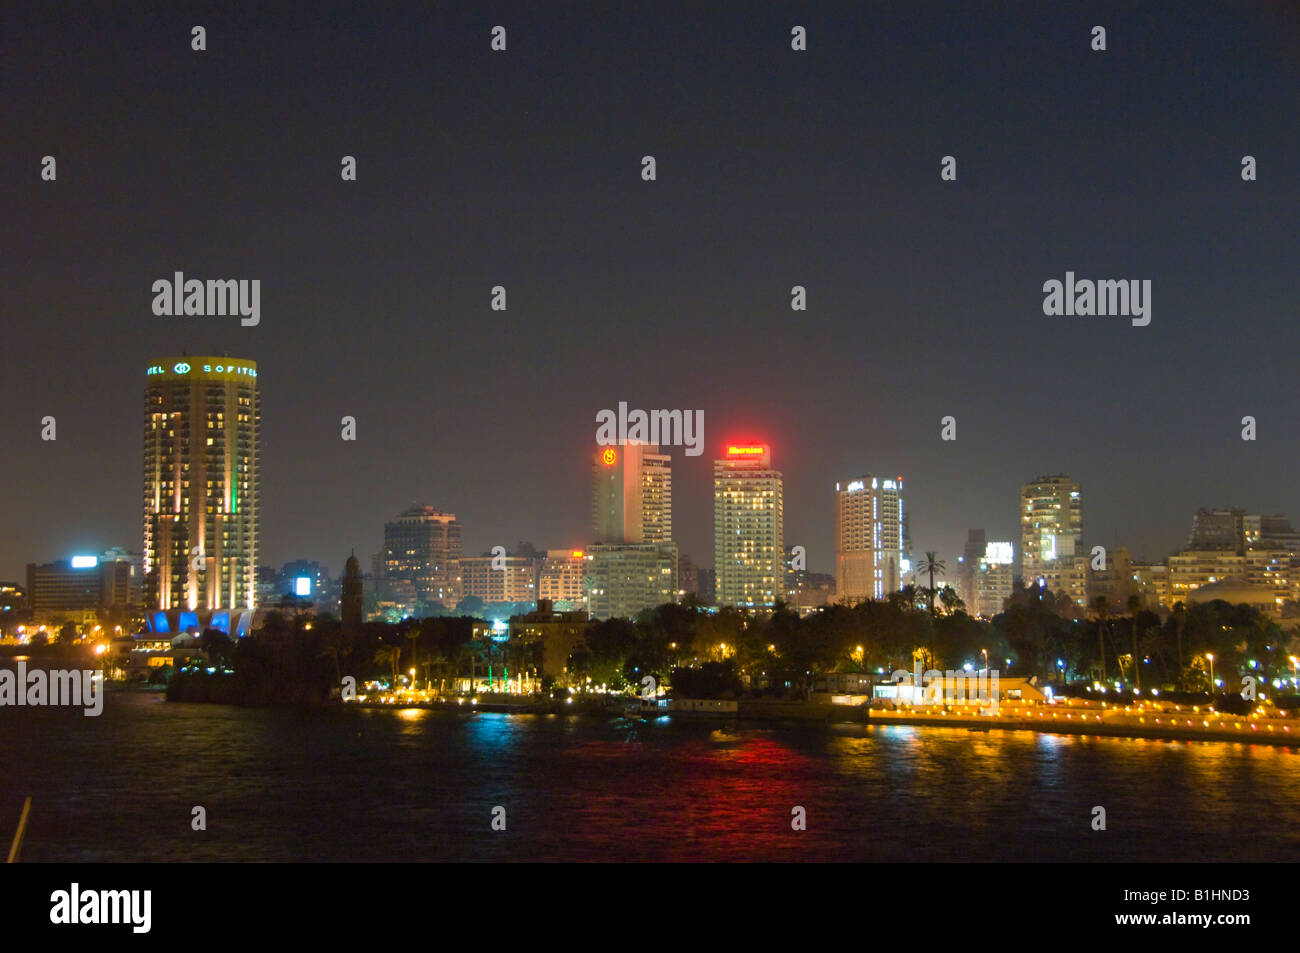 El Cairo, Egipto skyline con altos edificios iluminados al atardecer Foto de stock